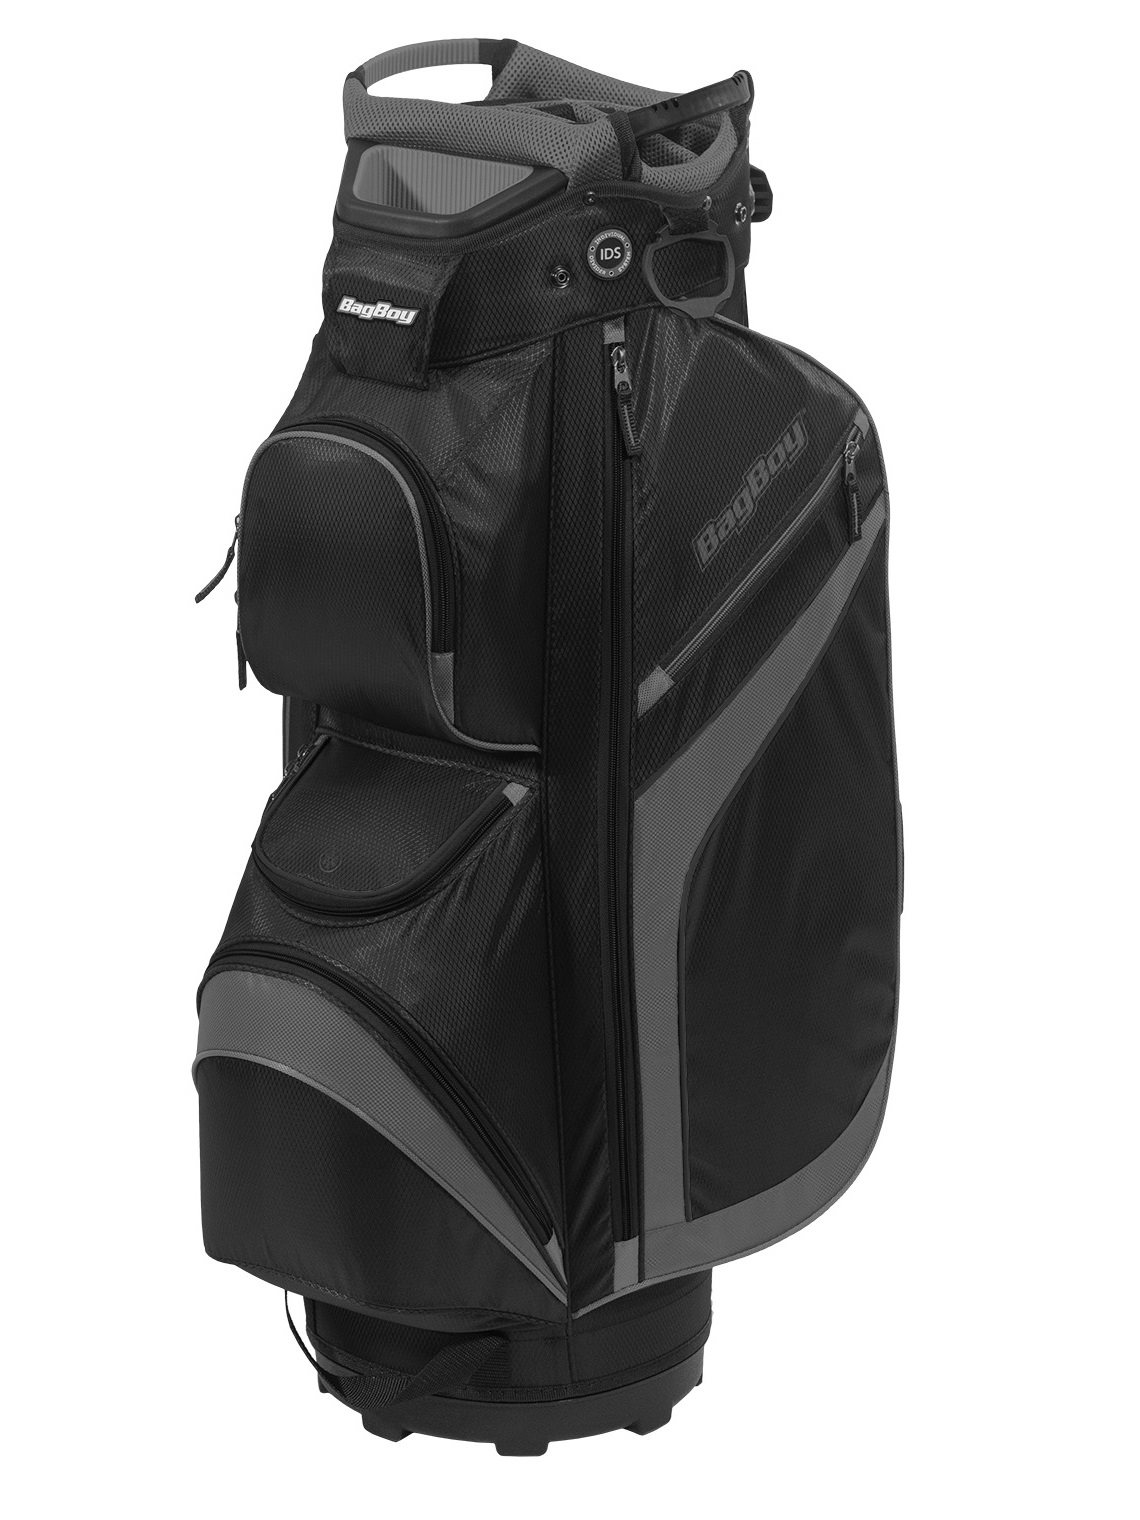 ik ben ziek snorkel Methode BagBoy golftas DG-Lite II TopLok Cart Bag zwart-grijs - Golftassen,  Golfclubs, Golfschoenen | Ook online kopen bij Golfers Point | Golfers Point